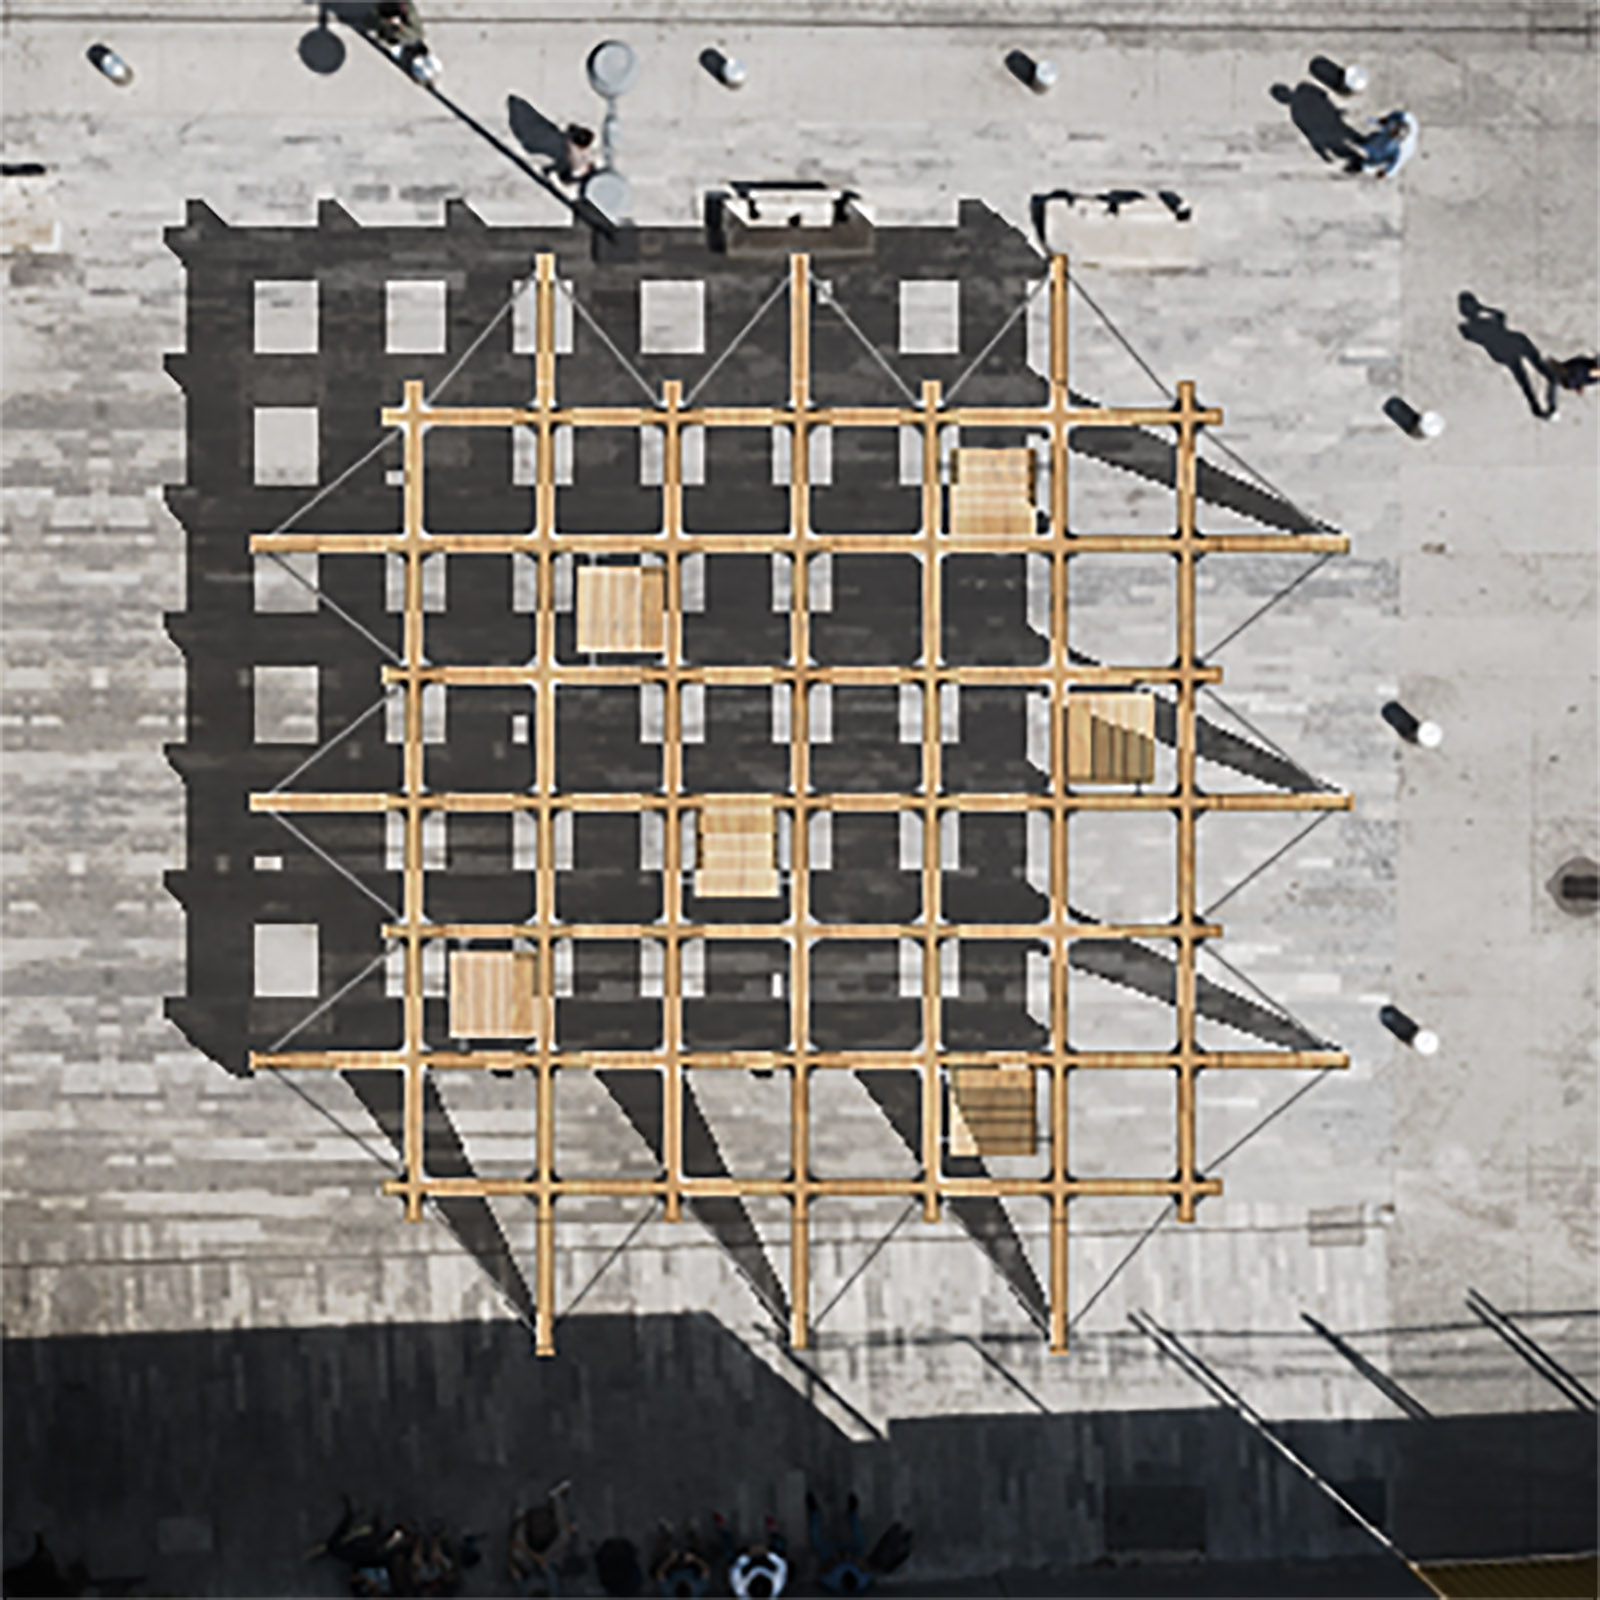 Project CLOUD9 by Recon Architecture, architecture studio in Bilbao